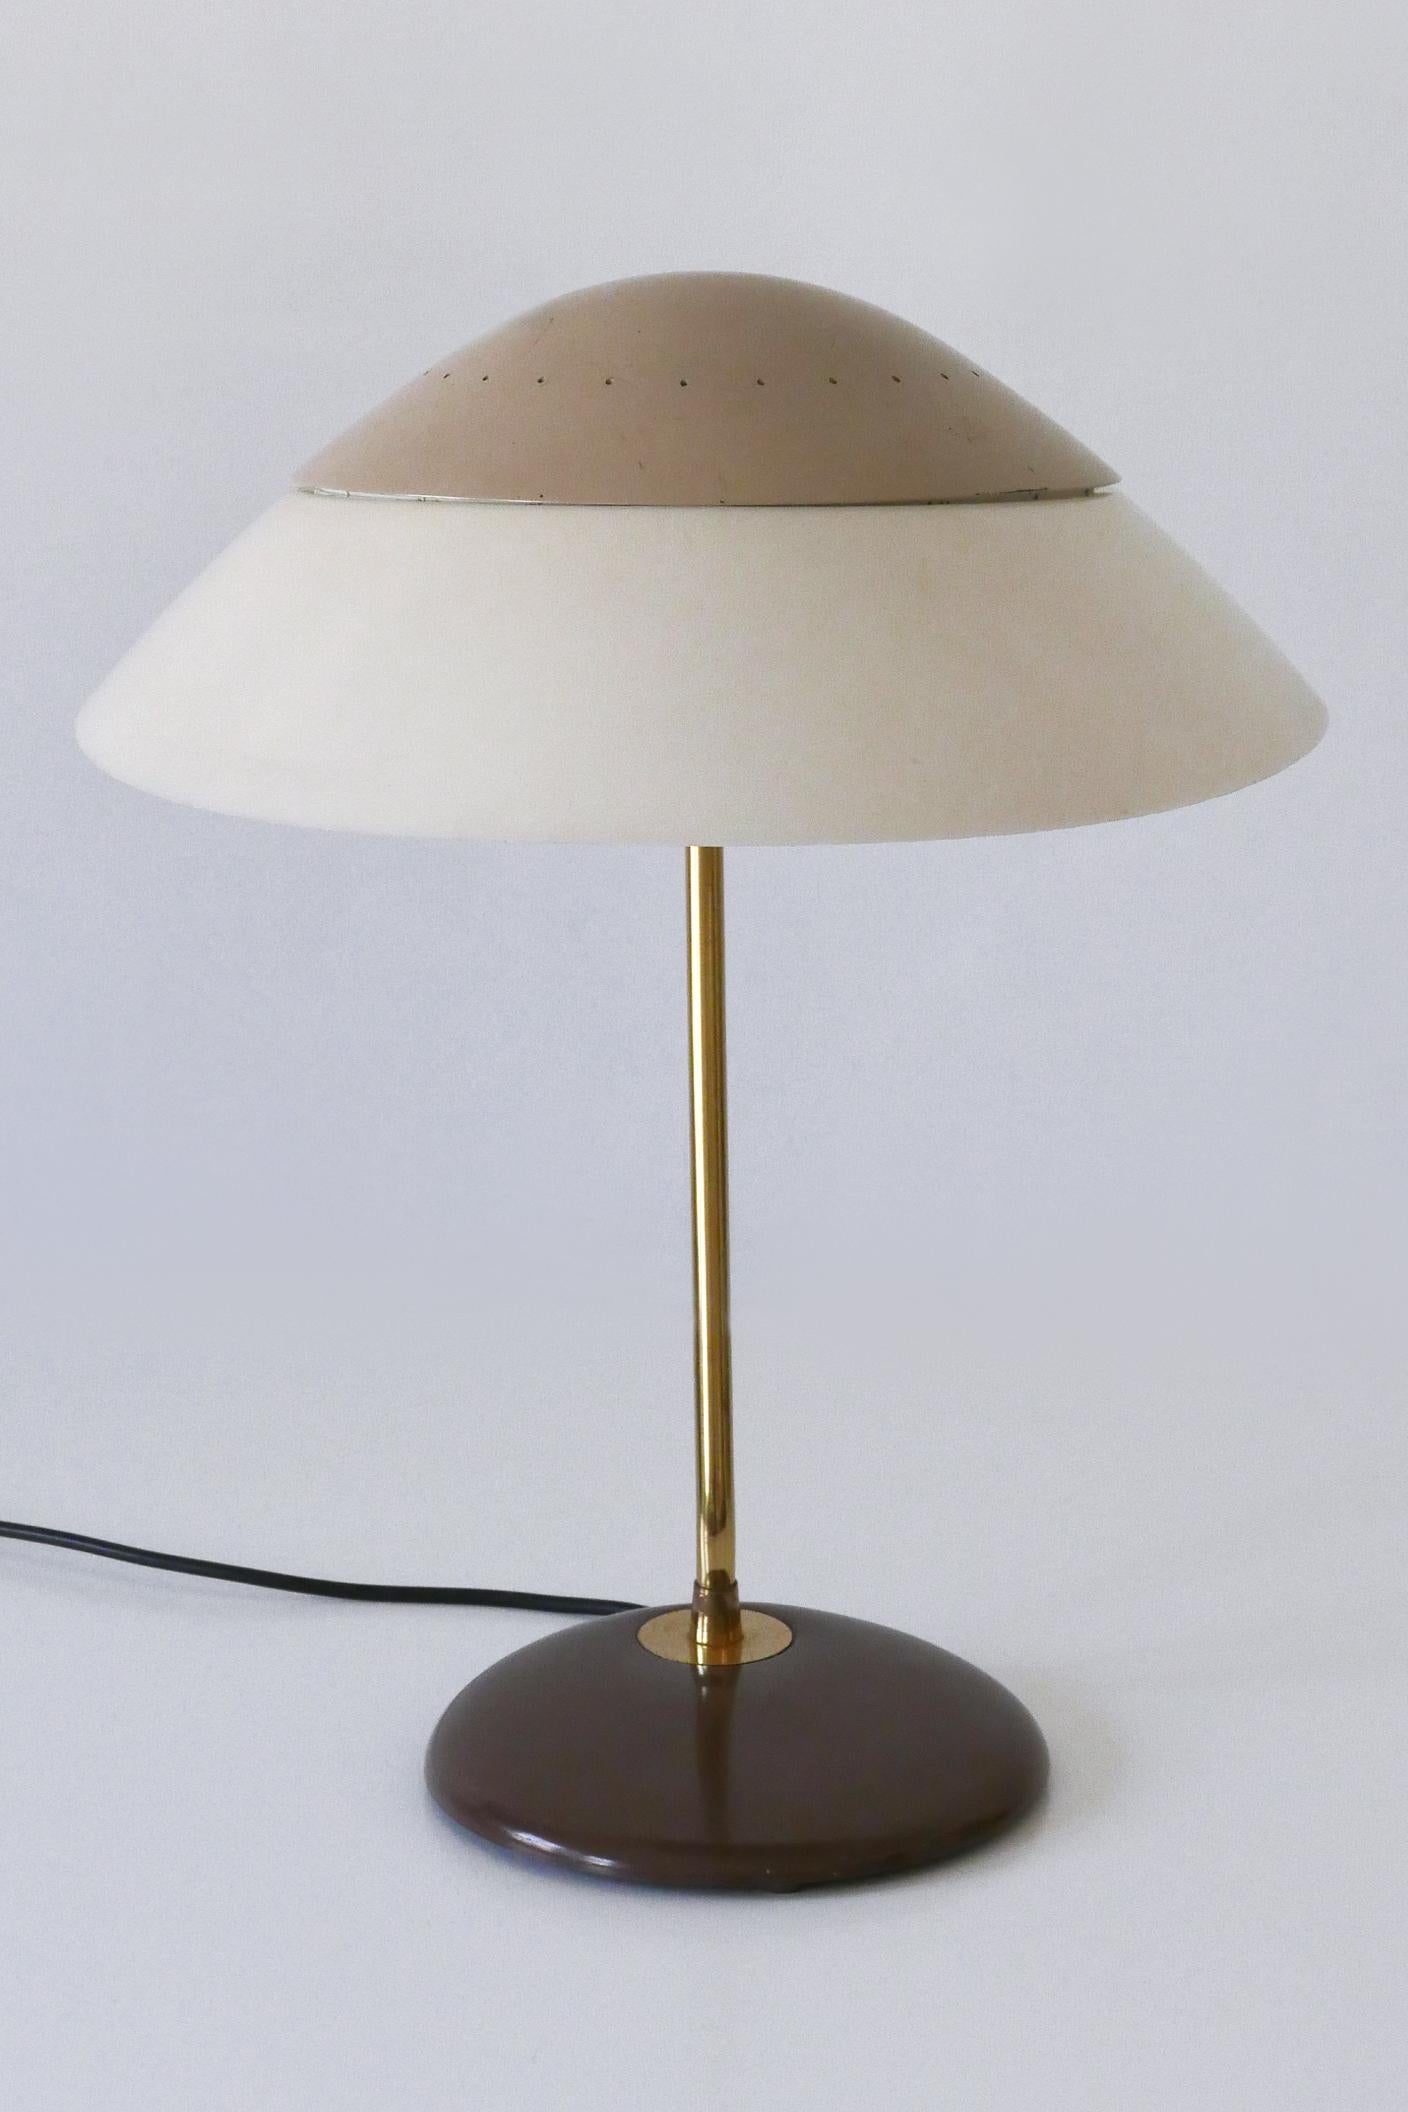 Elegant Table Lamp or Desk Light by Gerald Thurston for Lightolier USA 1950s For Sale 1